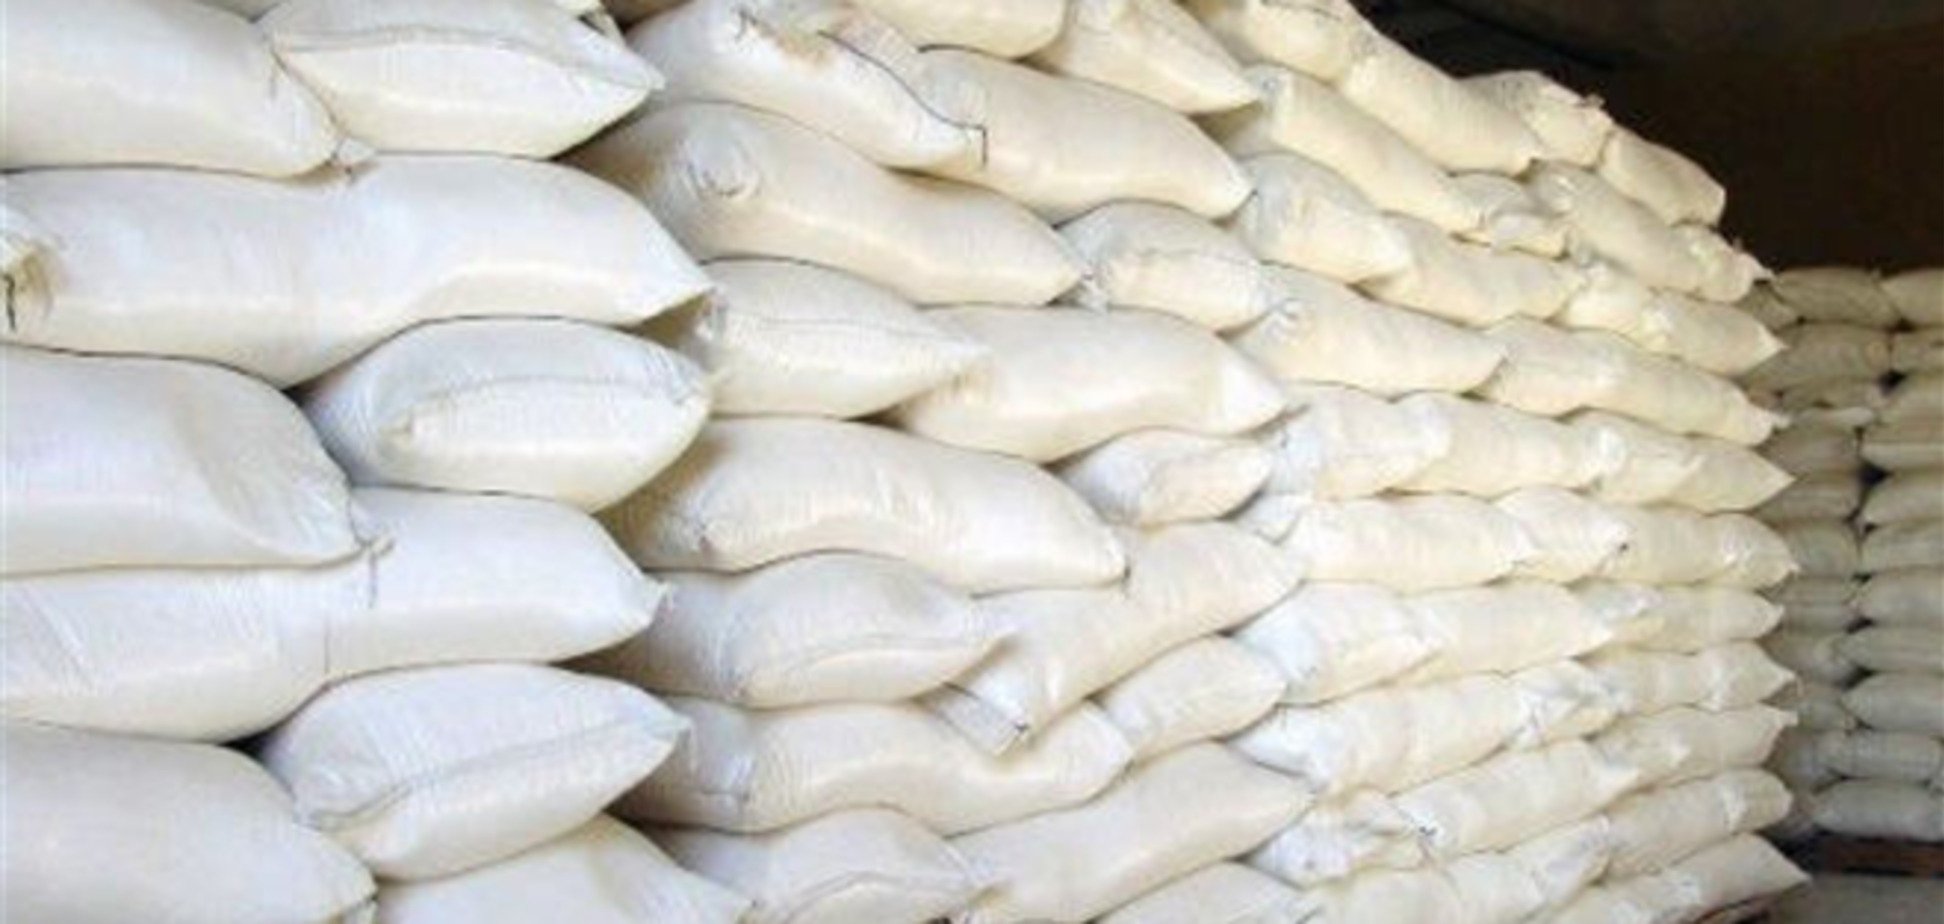 Производство сахара в Украине уменьшится на 1 млн. тонн - эксперт